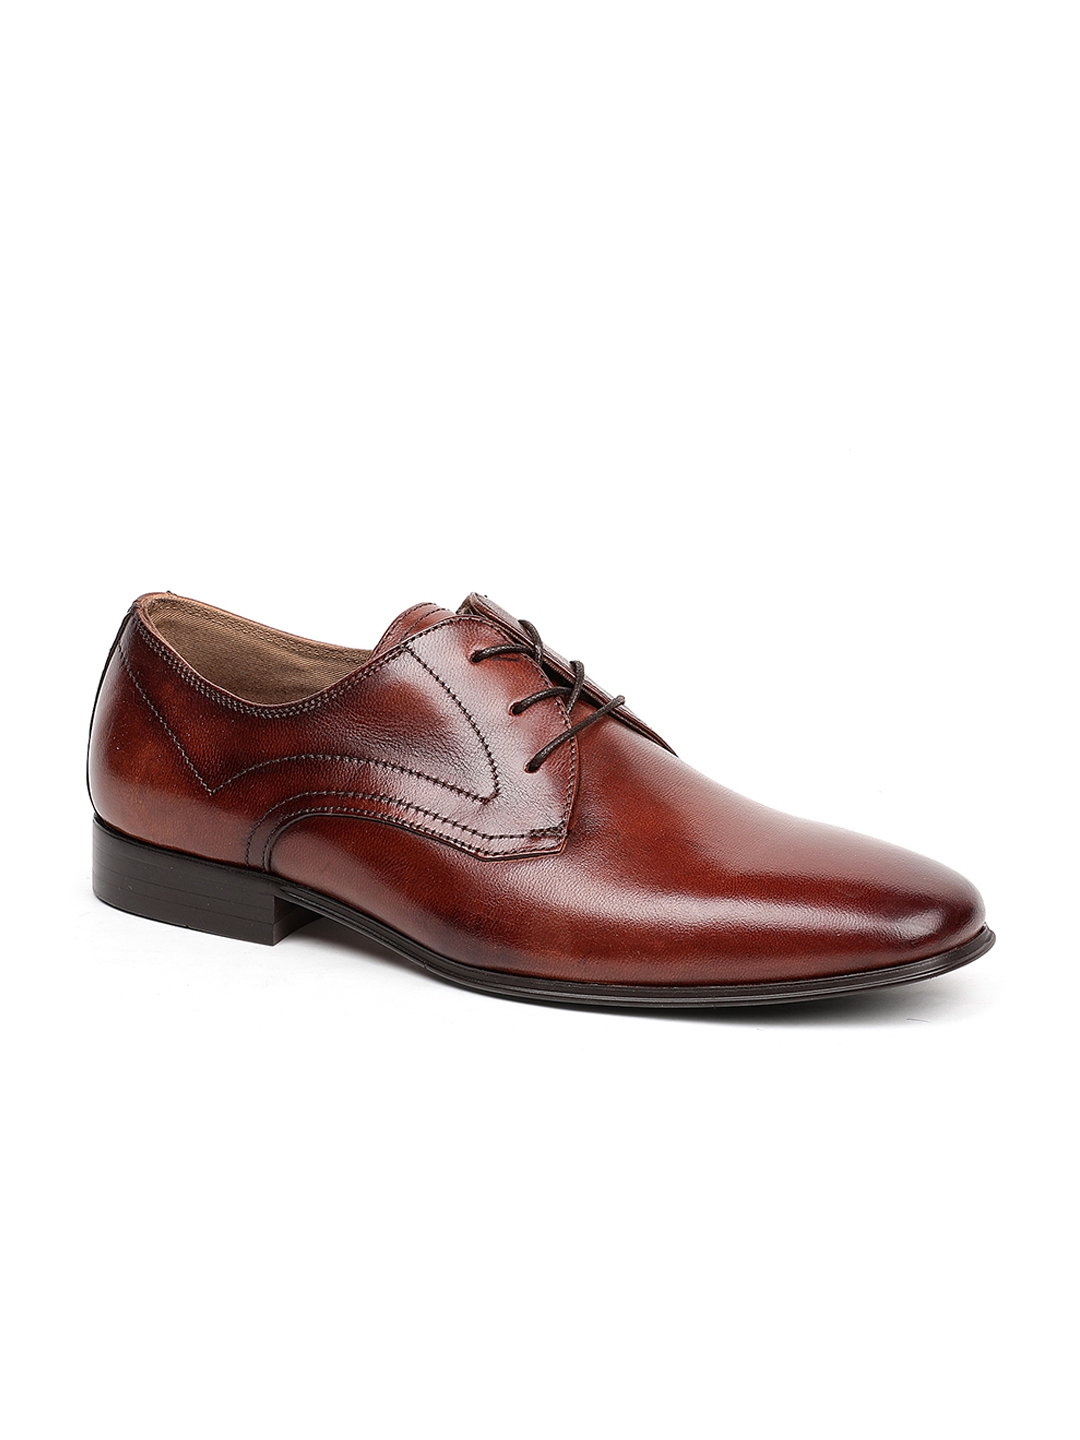 Buy ALDO Men Brown Formal Leather Derbys - Formal Shoes for Men 7763951 ...